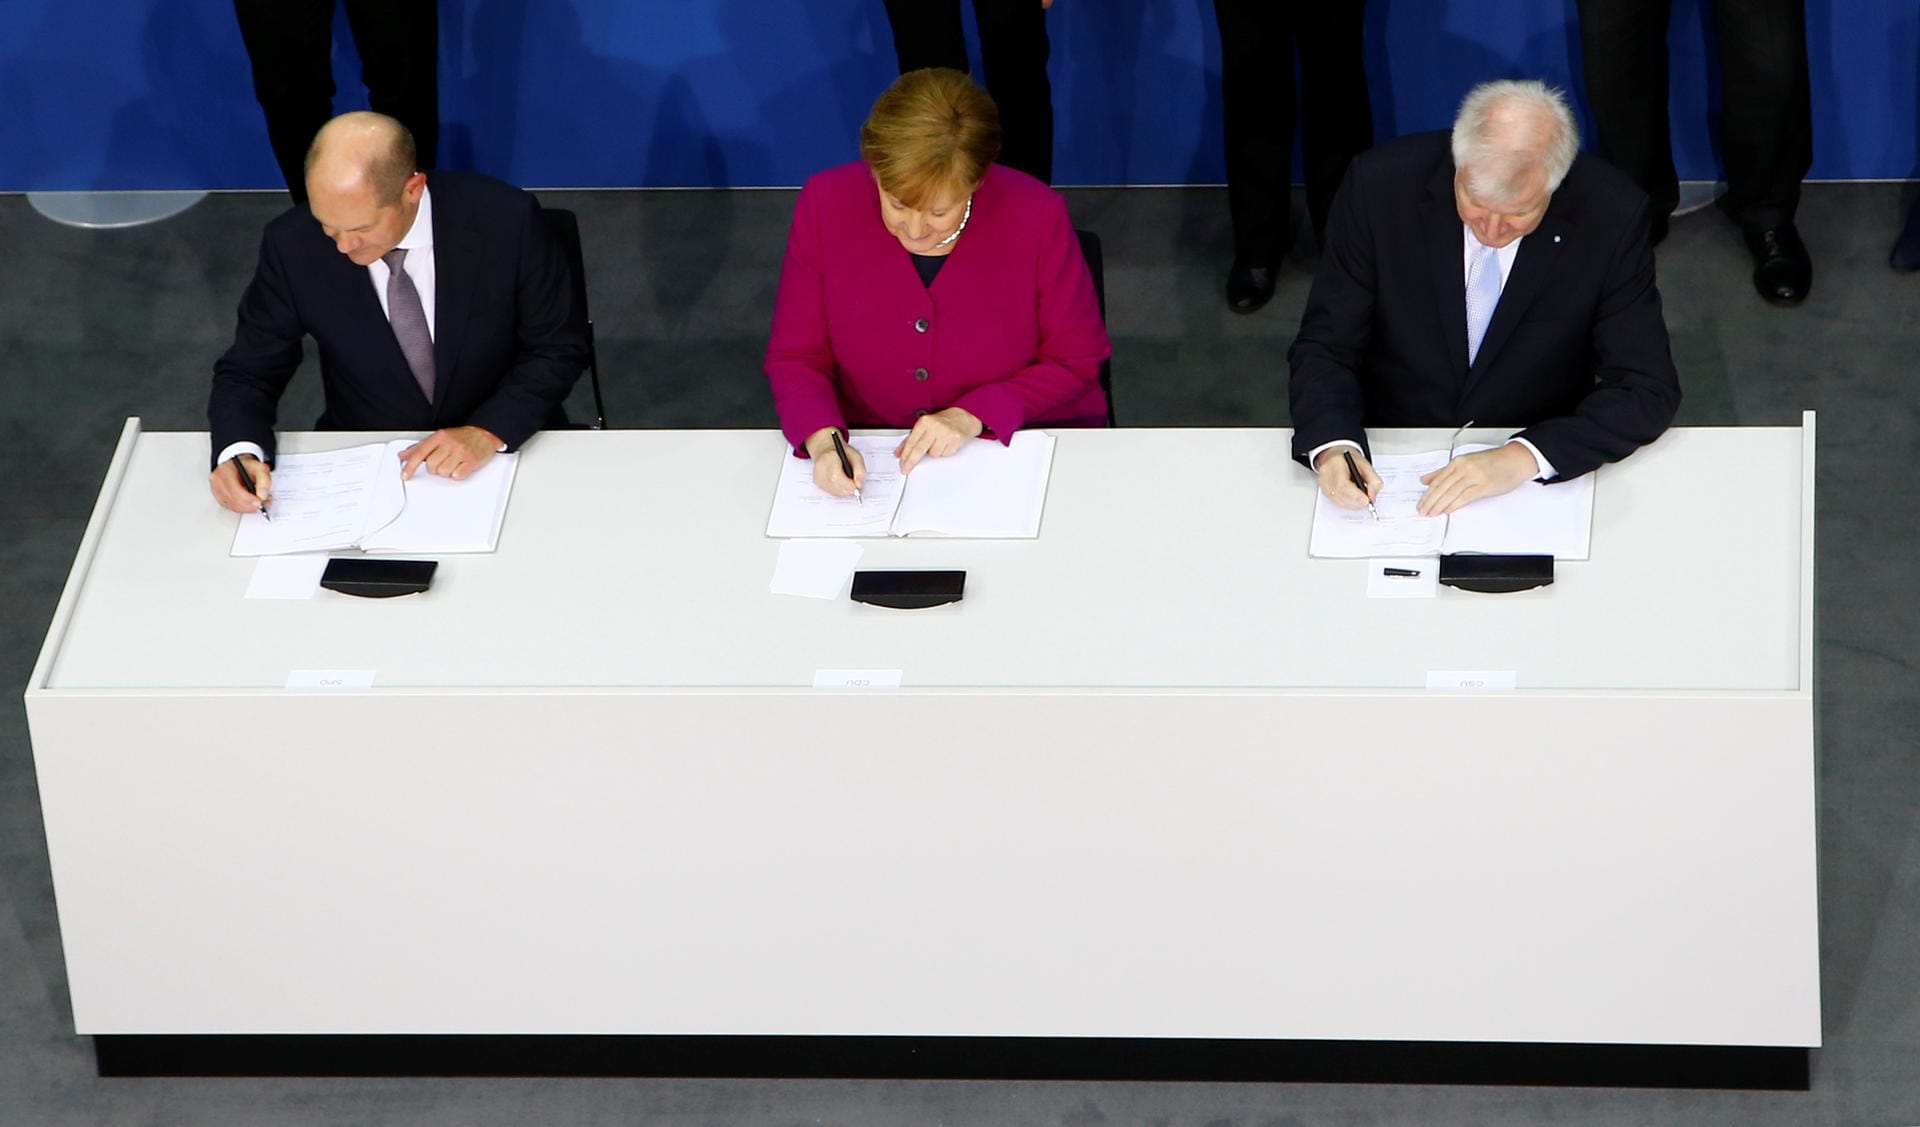 Schließlich stand das Bündnis doch, Merkel, Seehofer und Olaf Scholz für die SPD unterschrieben. Im März 2018 begann für Angela Merkel ihre vierte Amtszeit.